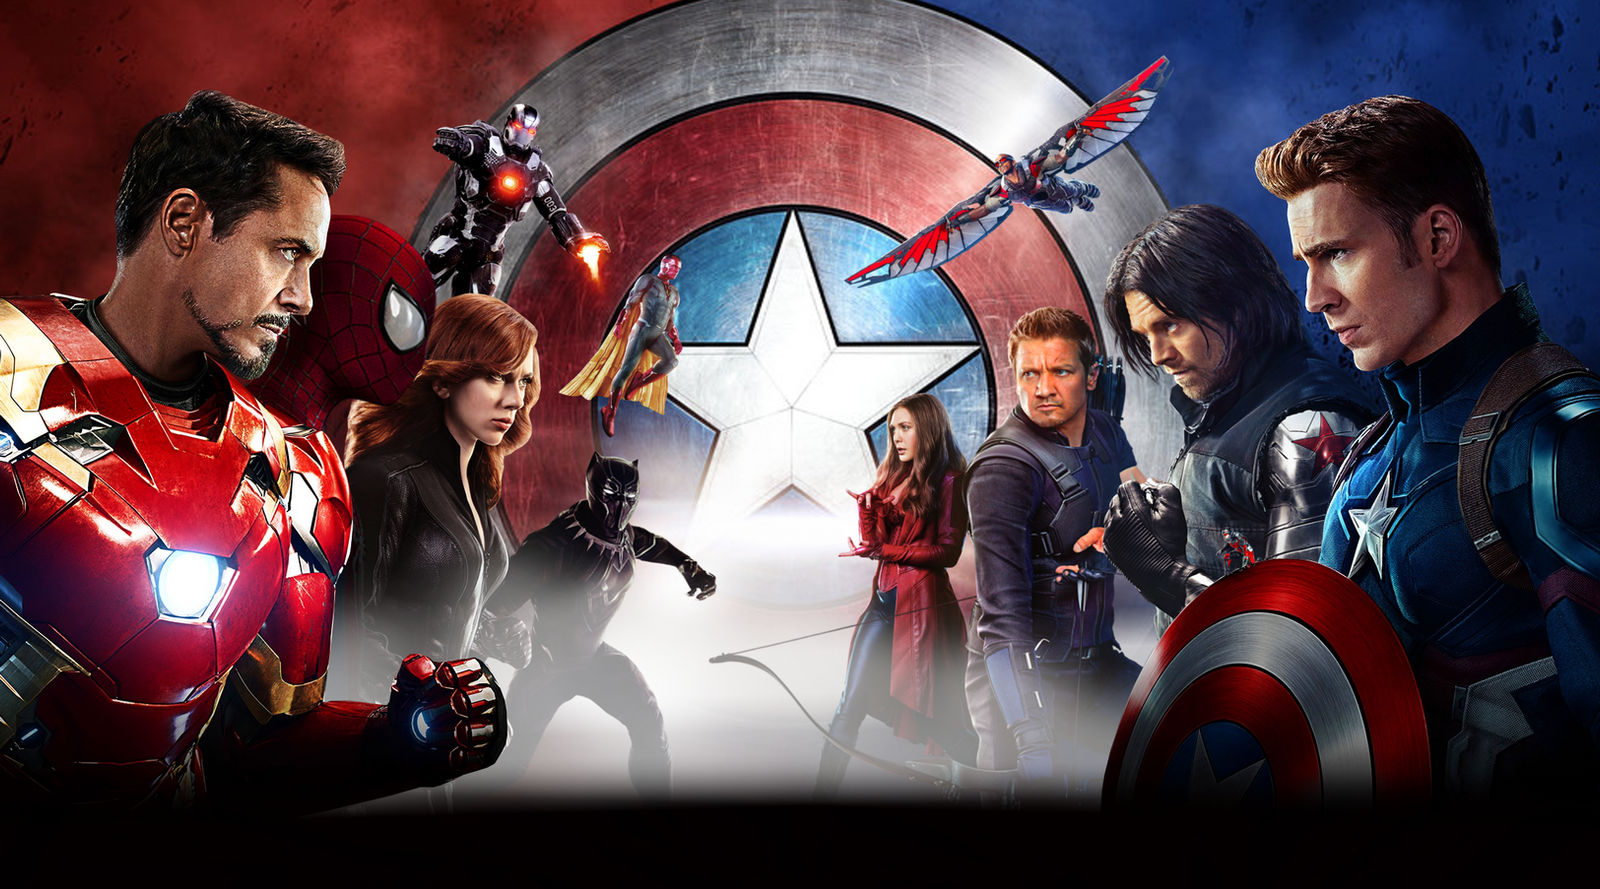 Captain America Civil War Wallpapers